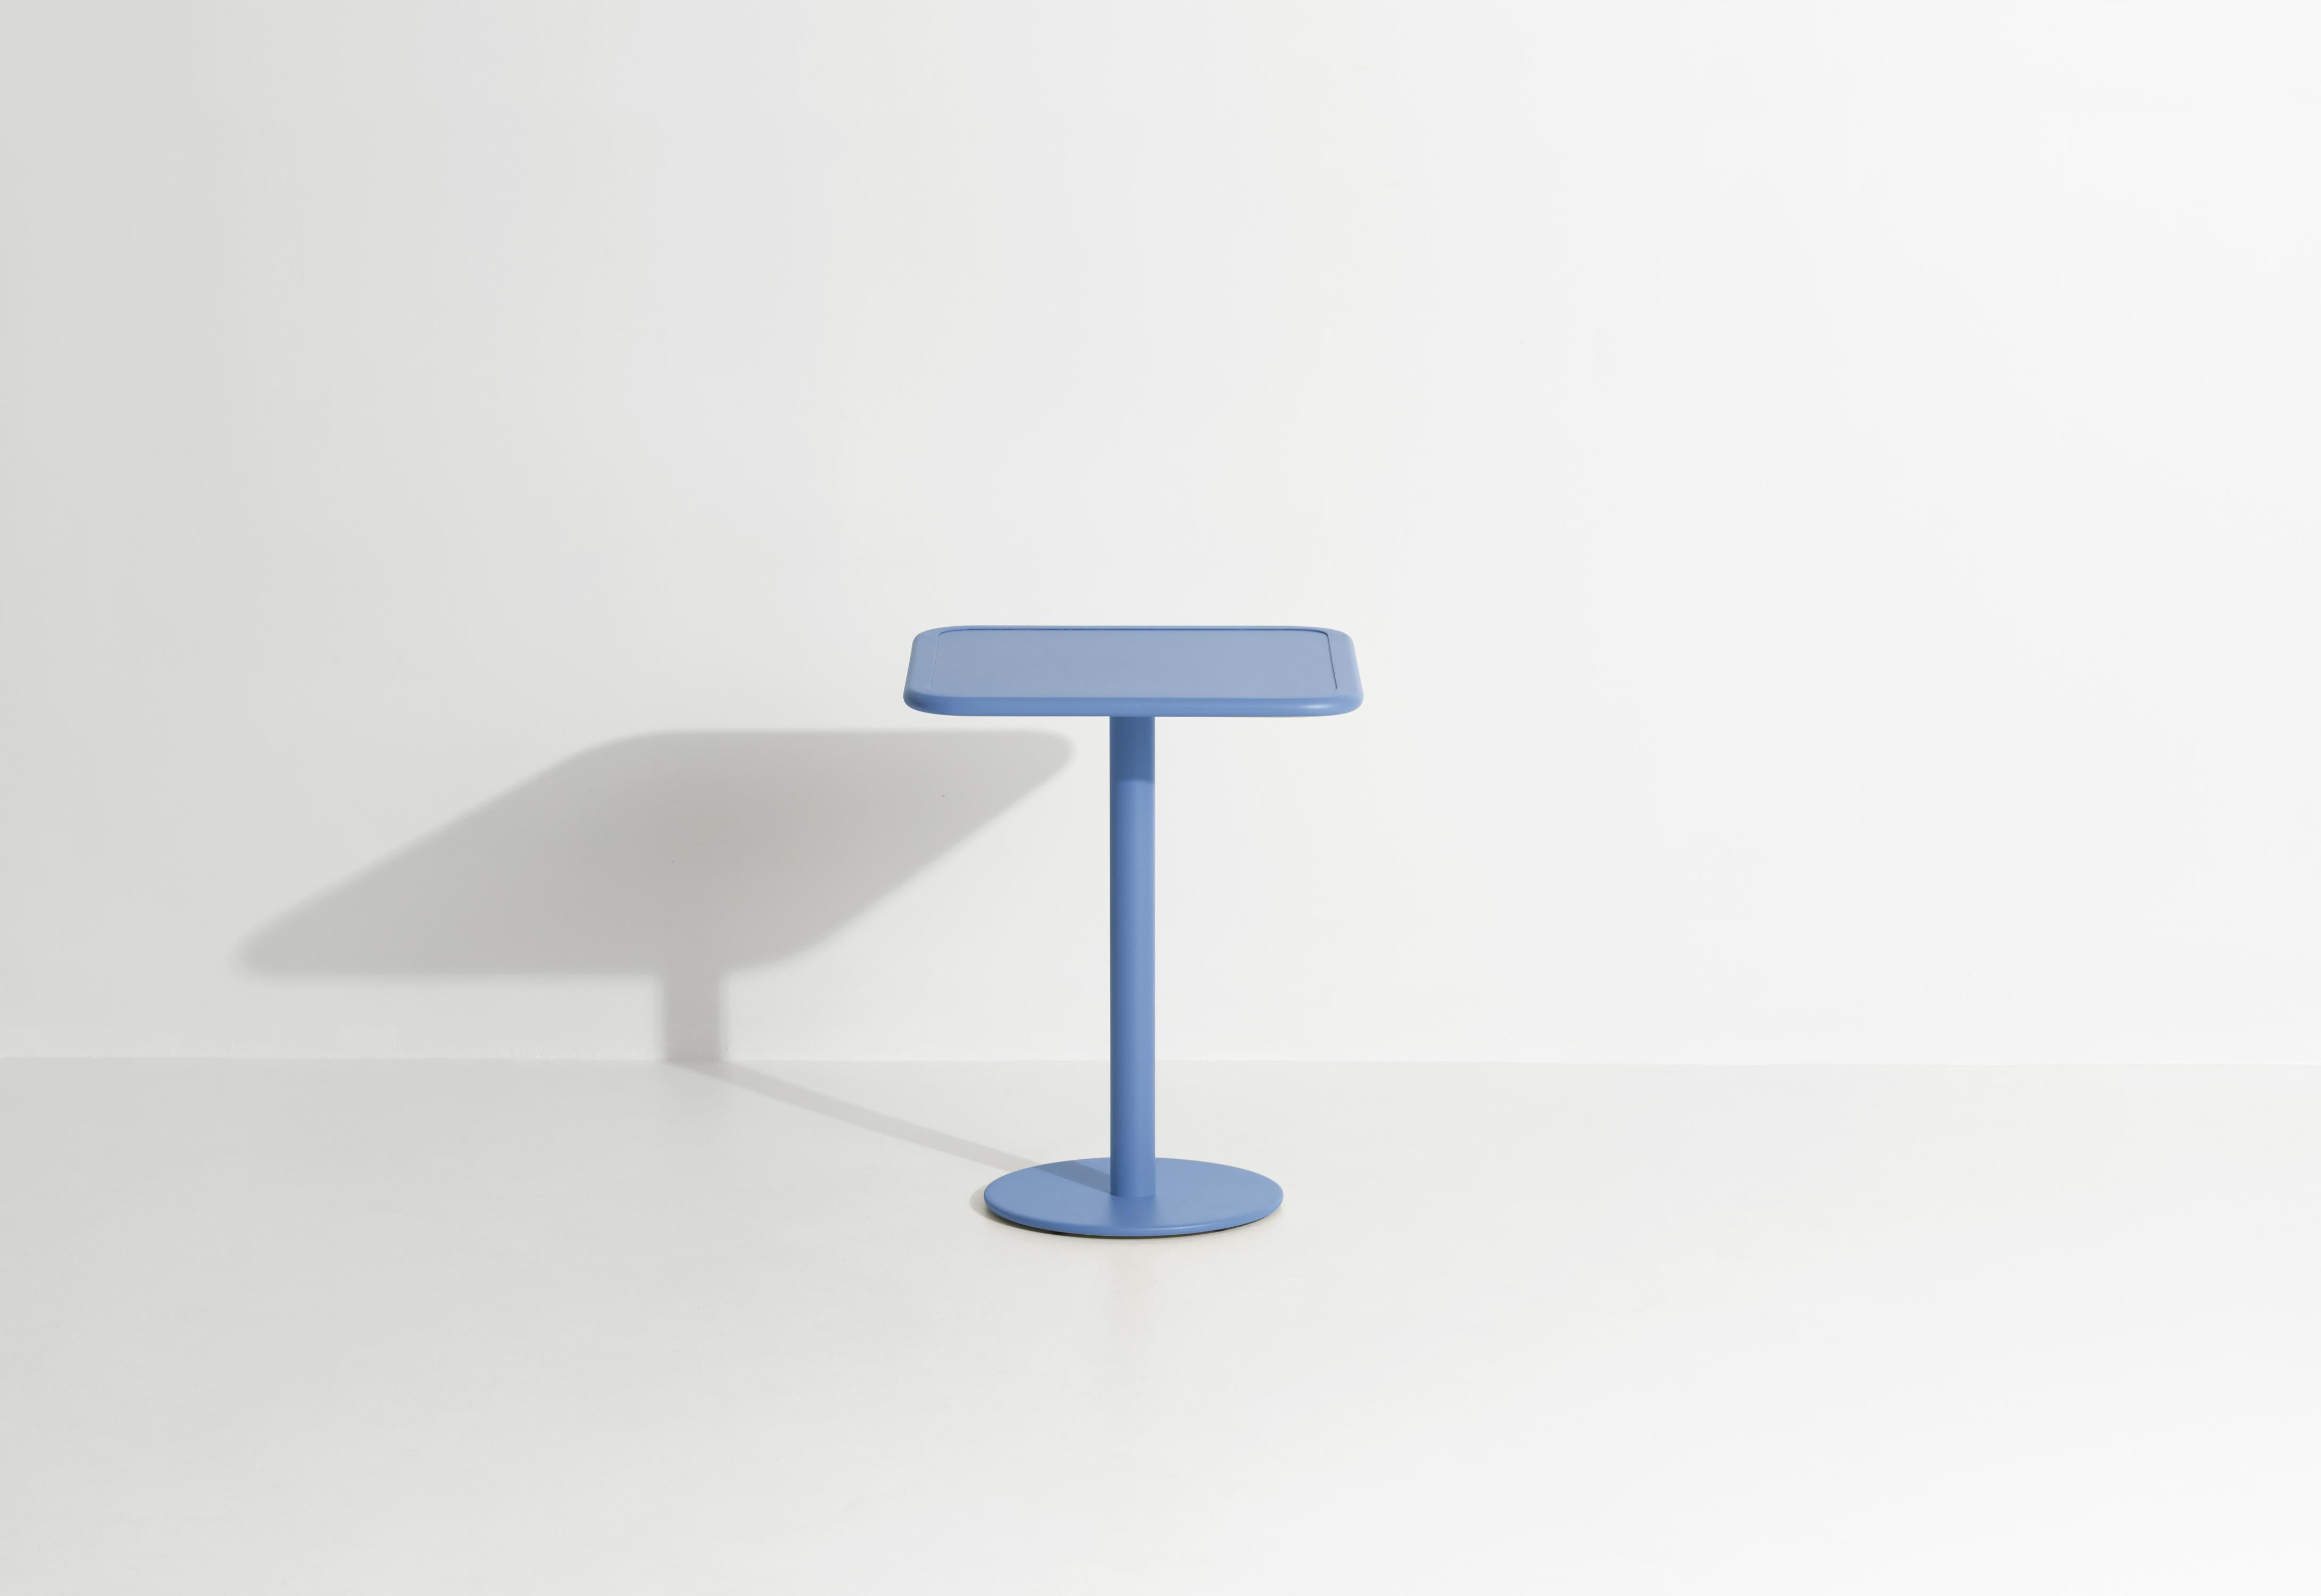 Petite Friture Week-End Bistro Square Dining Table in Azure Blue Aluminium by Studio BrichetZiegler, 2017

Die Week-End-Kollektion besteht aus einer kompletten Palette von Außenmöbeln mit mattierter Epoxidharzlackierung mit Aluminiummaserung, die 18